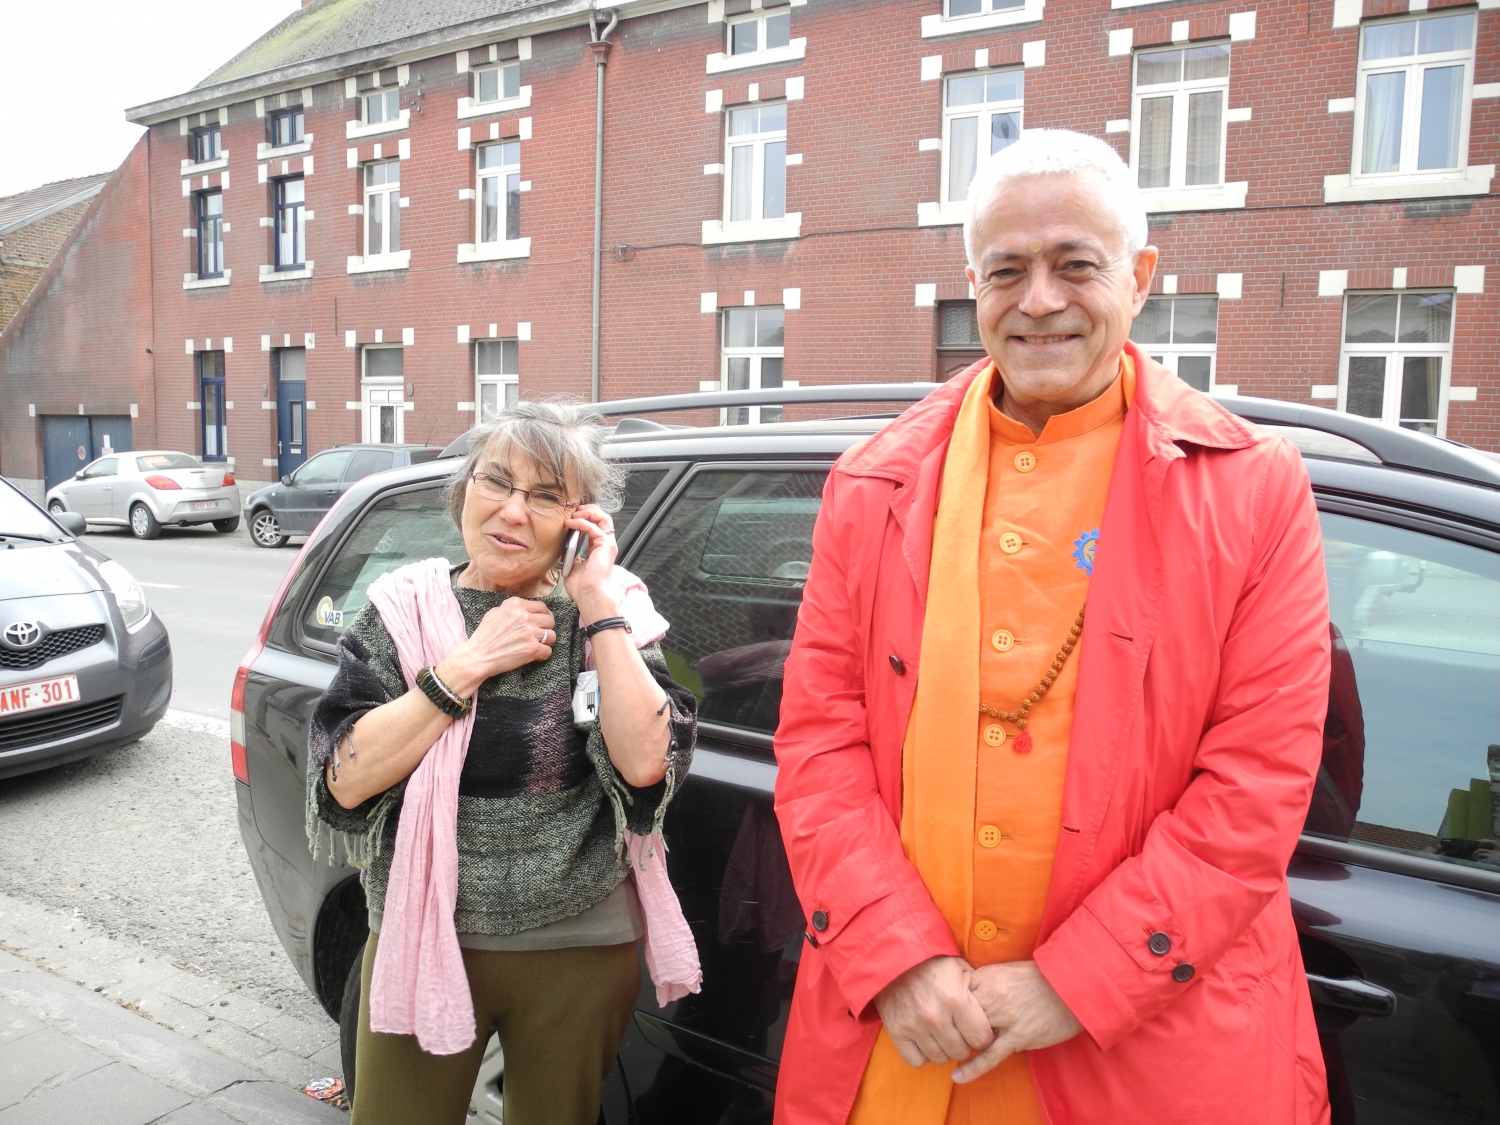 Encuentro de H.H. Jagat Guru Amrta Sūryānanda Mahā Rāja con el Maestro Thierry Van Brabant - Centre Samtosha, Jodoigne, Bélgica - 2012, marzo